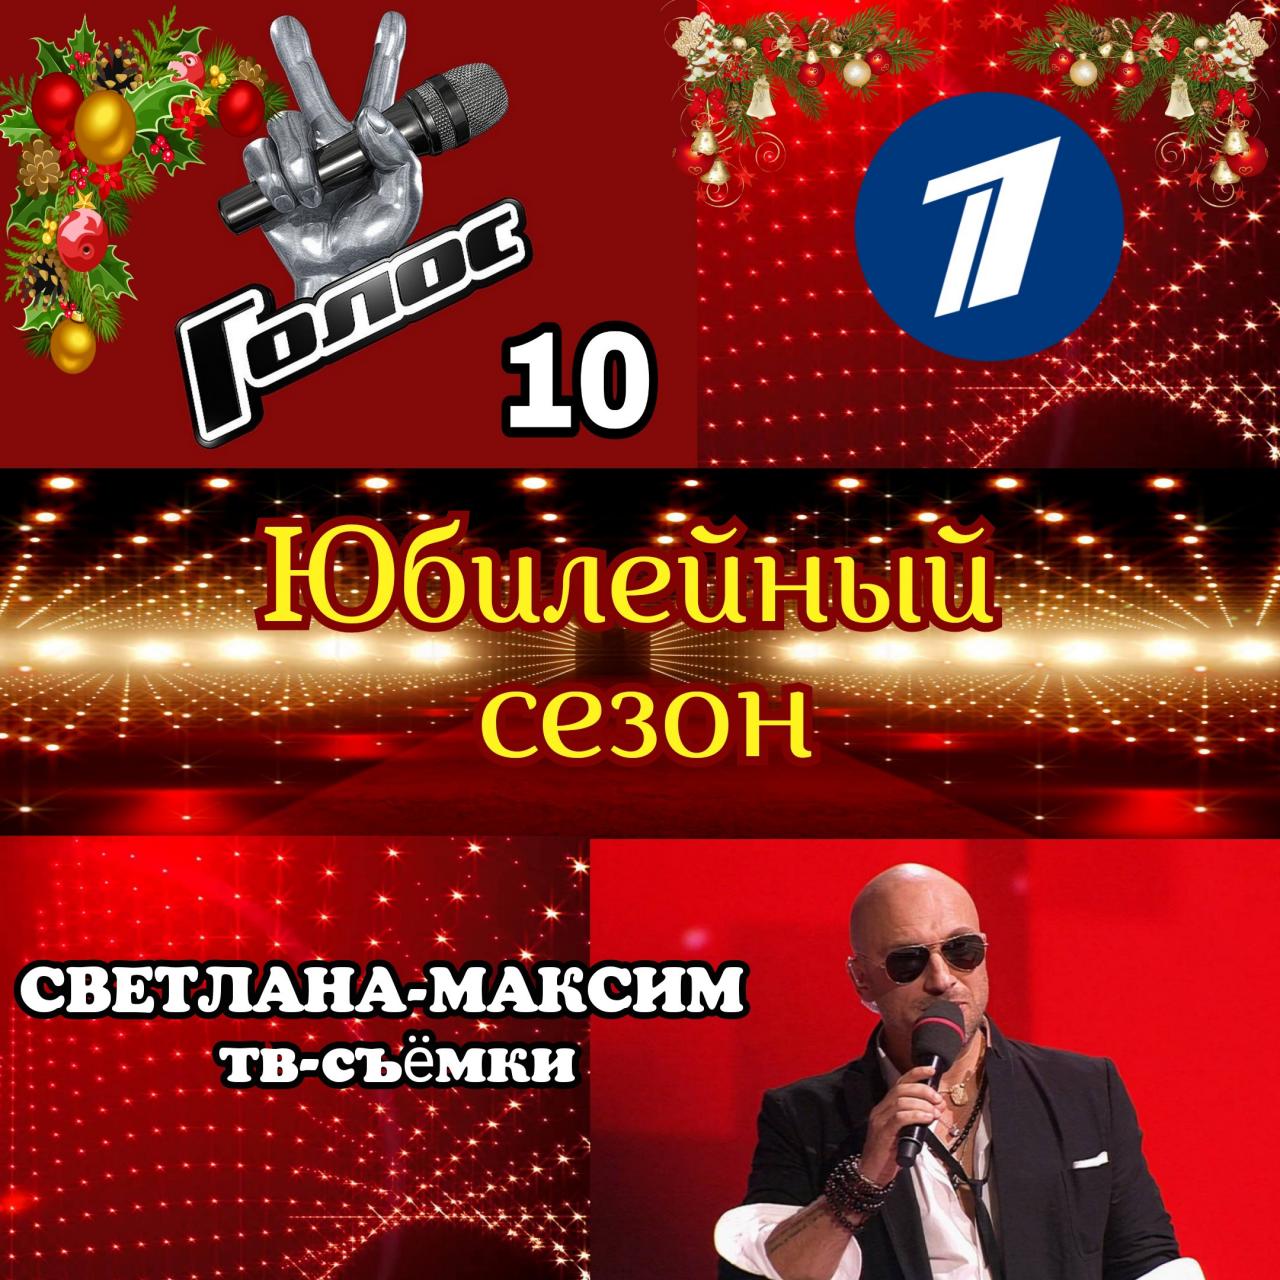 17 декабря музыкальное супер-шоу "ГОЛОС 10". Прямой эфир.